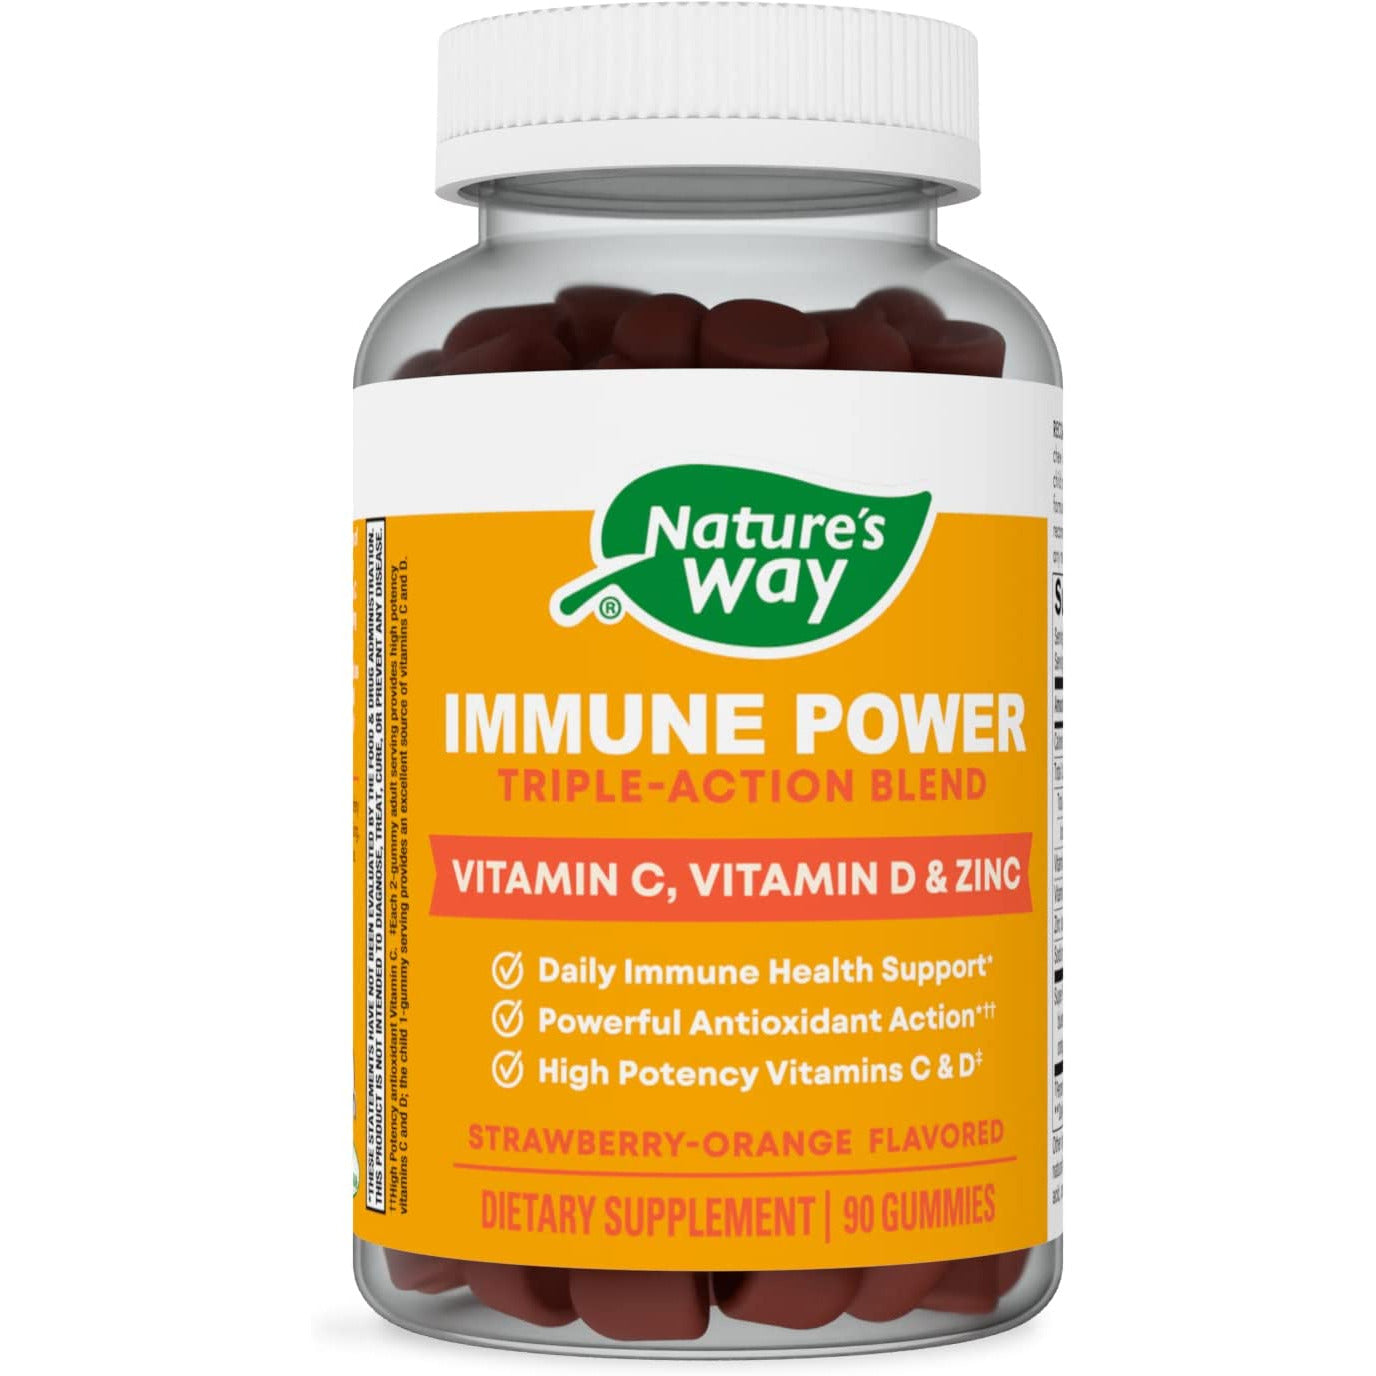 Immune Power, Triple Action Immune Blend*, Vitamins C and D, Zinc